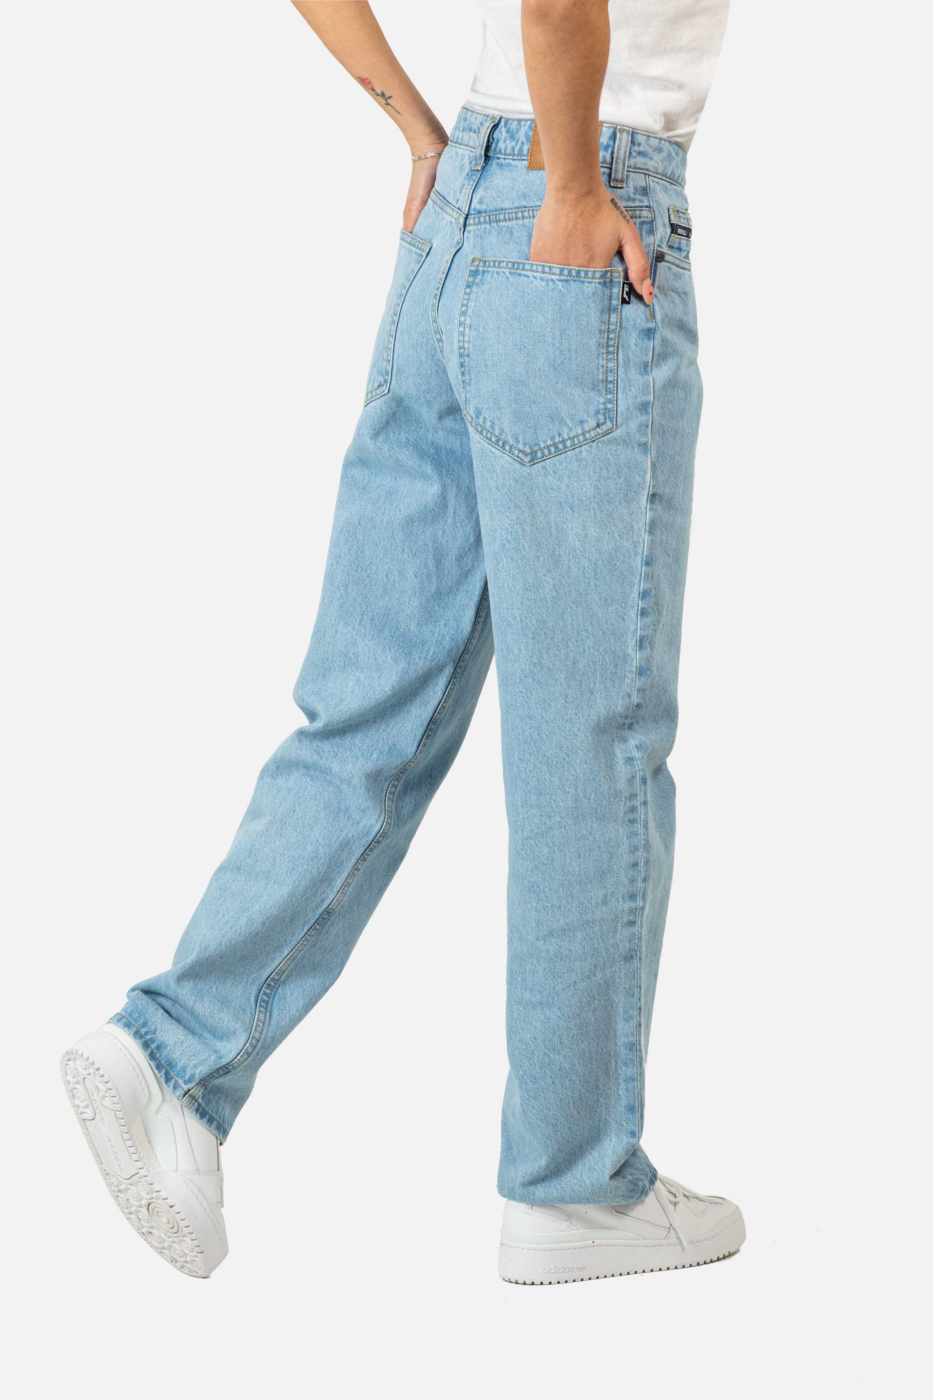 Aggregat mehr als 77 light blue baggy jeans womens am besten ...